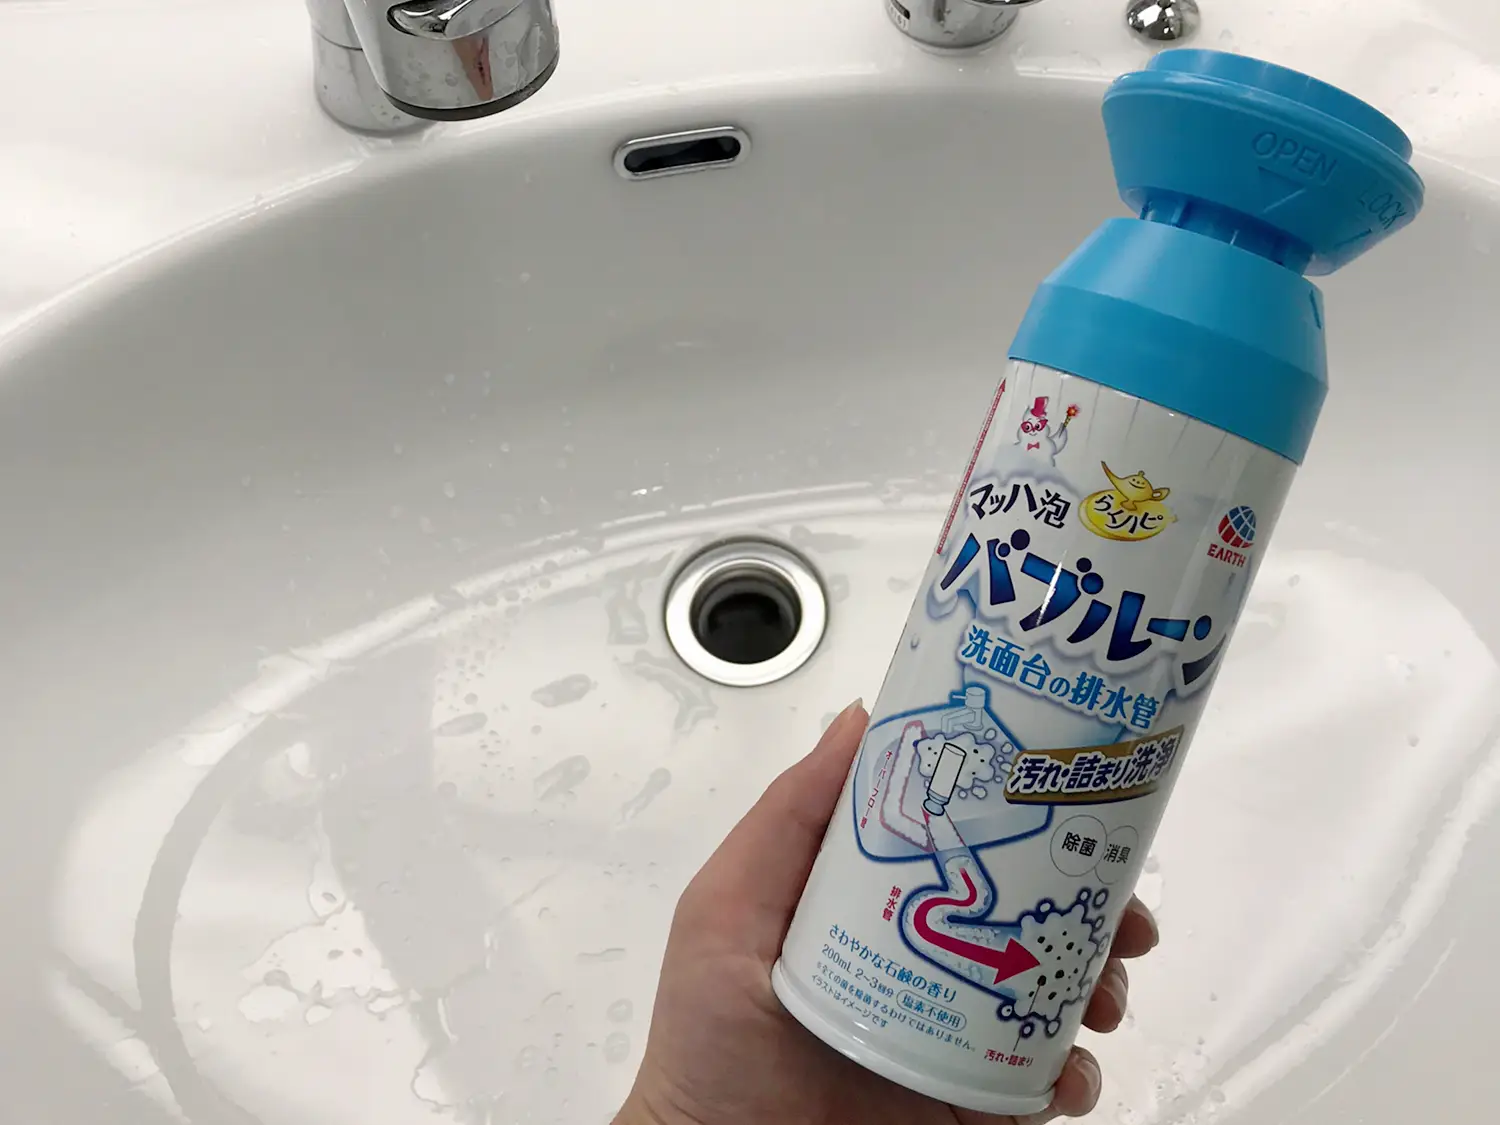 最新のデザイン 排水溝 掃除 洗剤 らくハピ マッハ泡 バブルーン 洗面